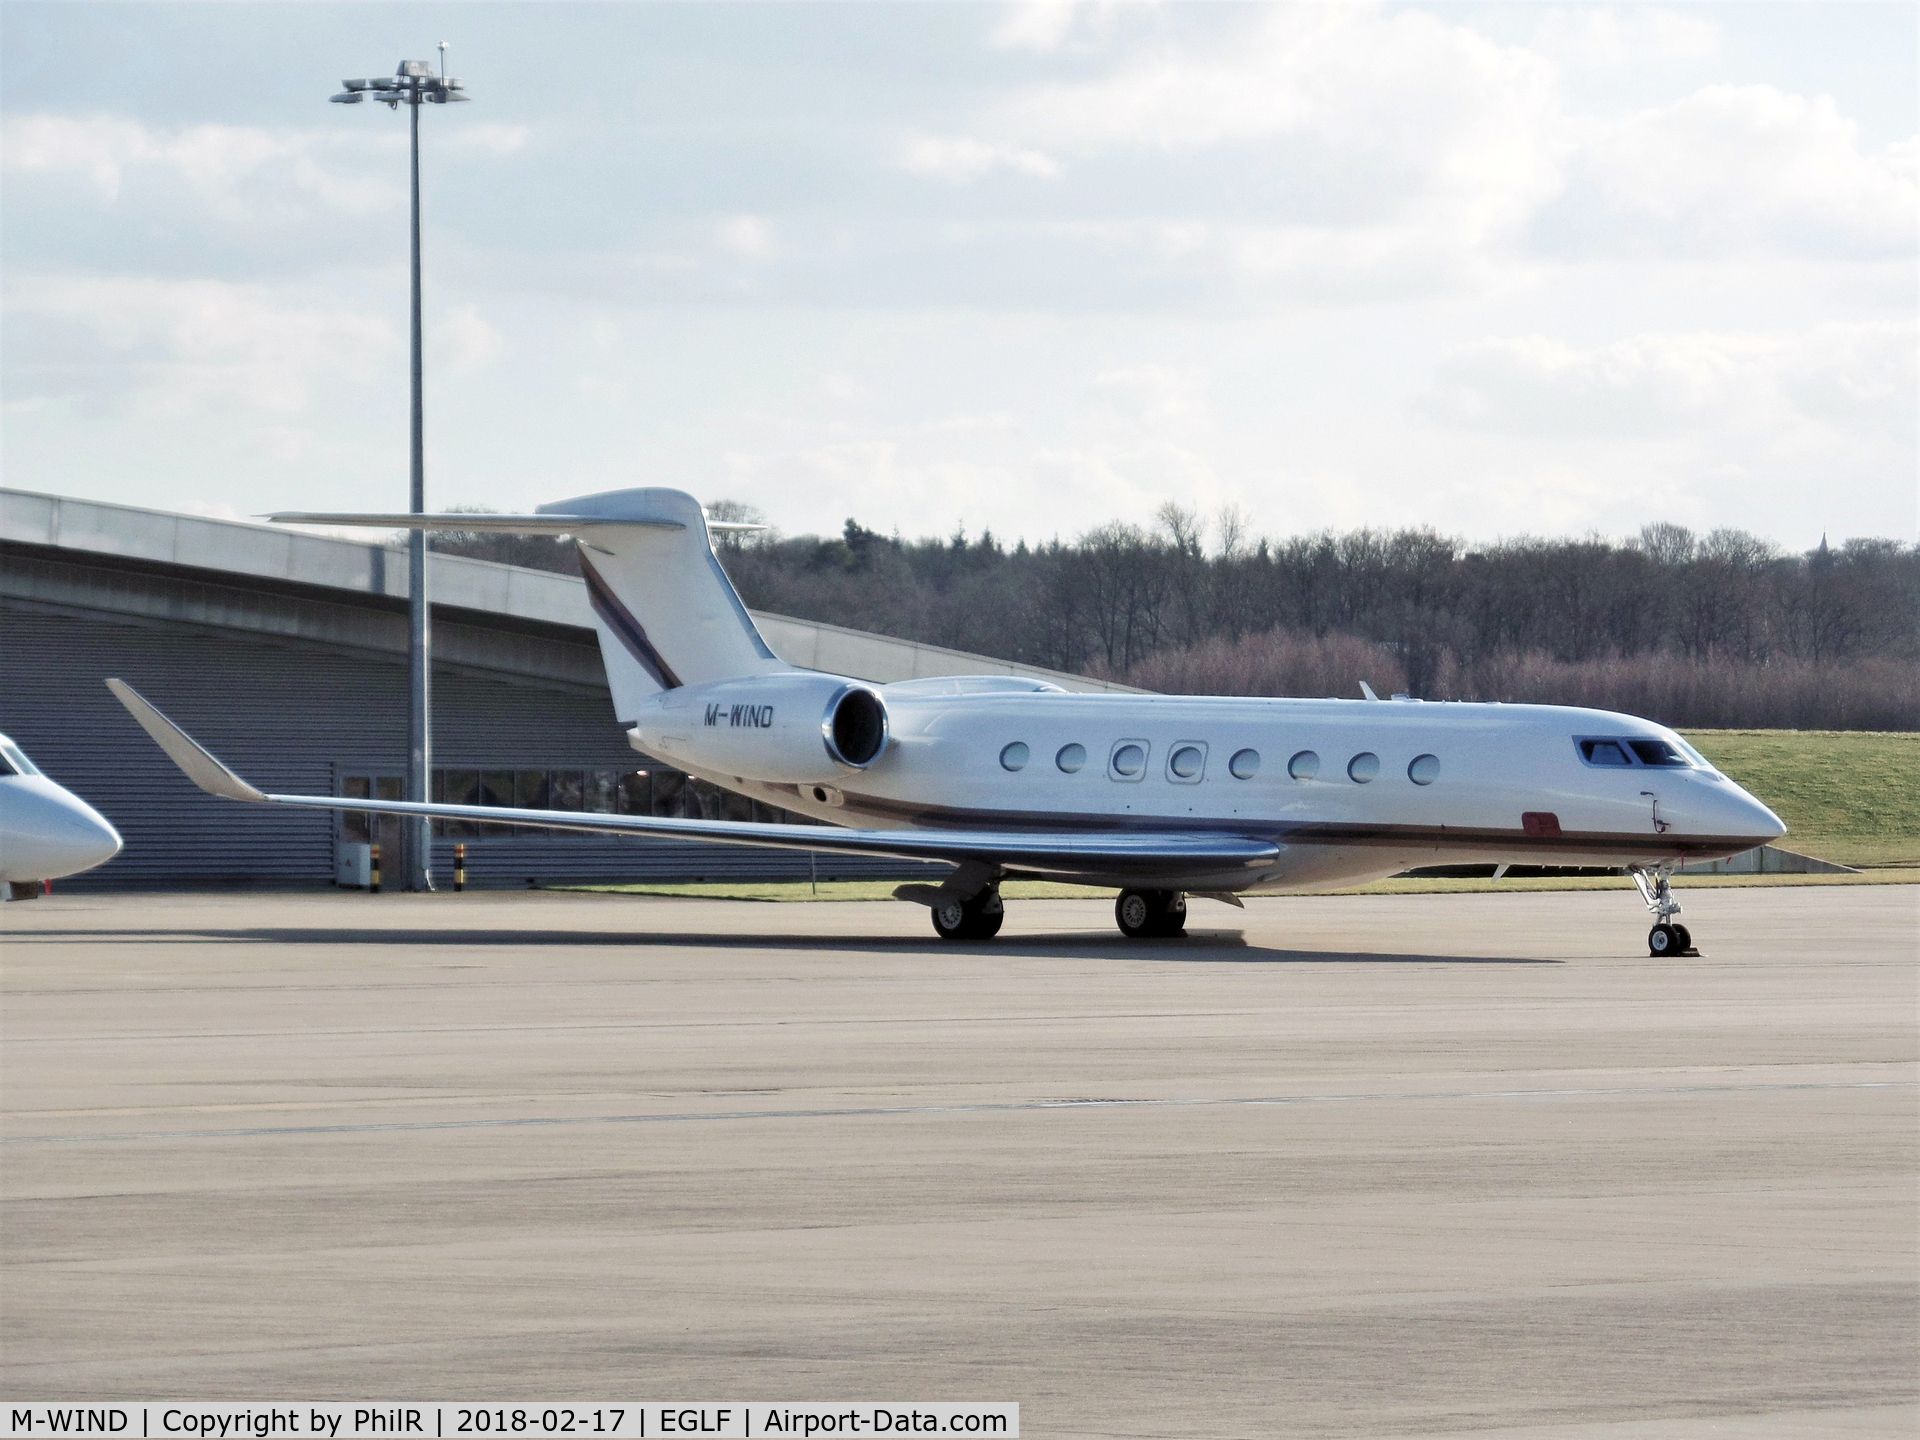 M-WIND, 2014 Gulfstream Aerospace G650 (G-VI) C/N 6080, M-WIND 2014 Gulfstream G650 Farnborough